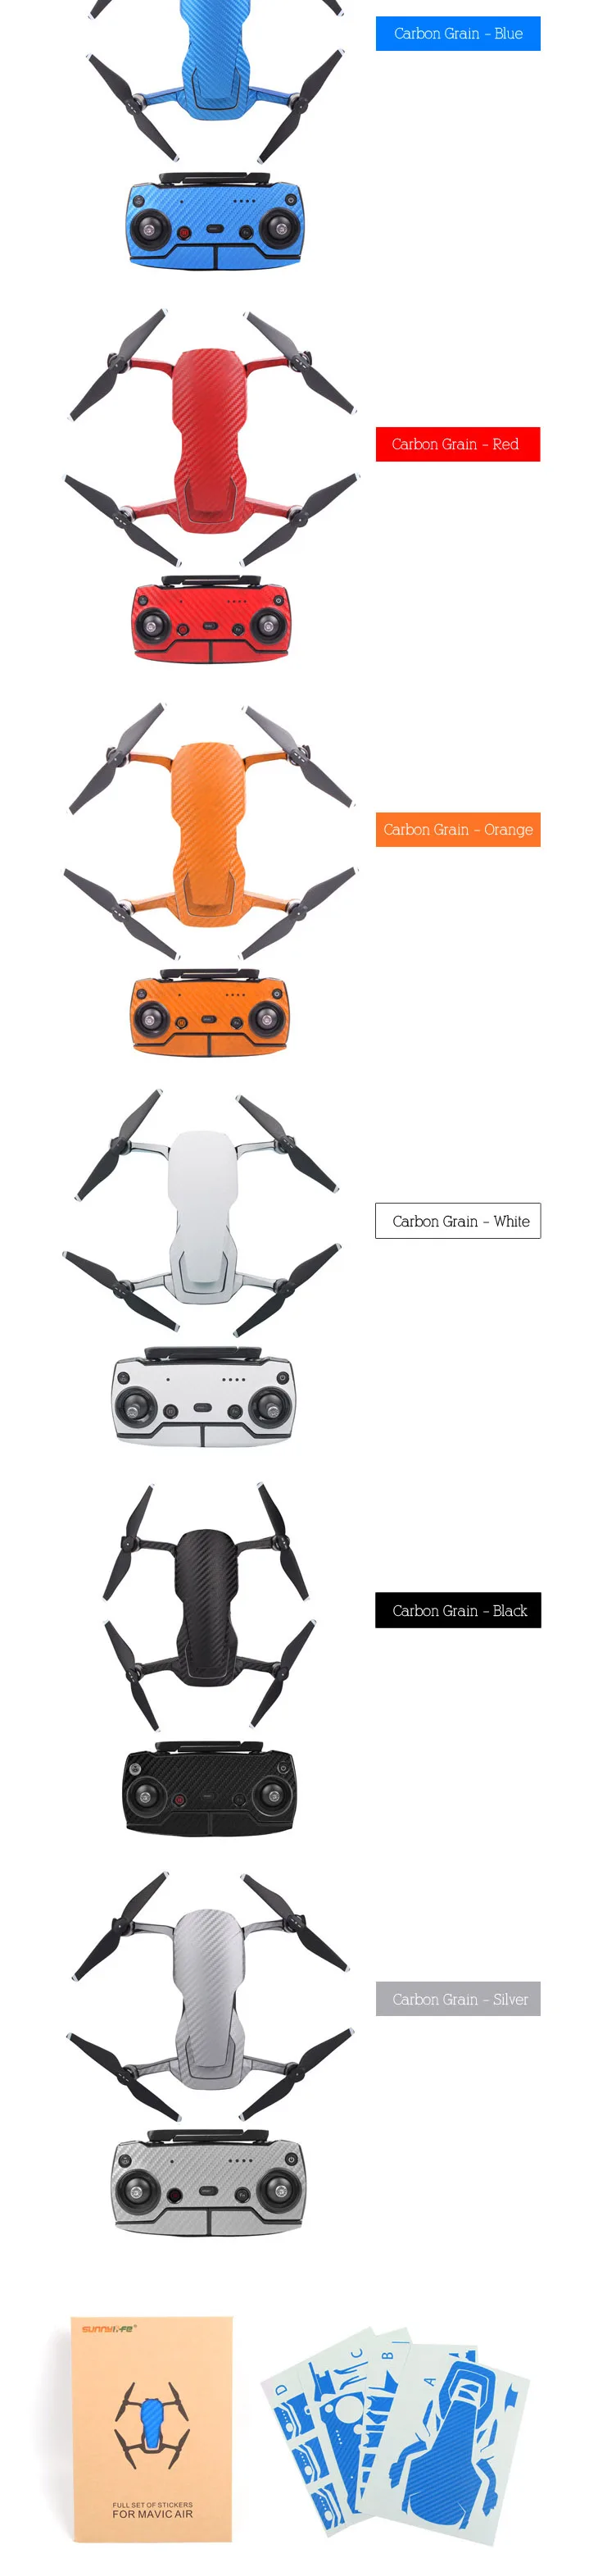 Новое поступление водонепроницаемый ПВХ углеродное волокно графические стикеры полный набор кожи наклейки для DJI MAVIC AIR drone Boday& удаленные аксессуары